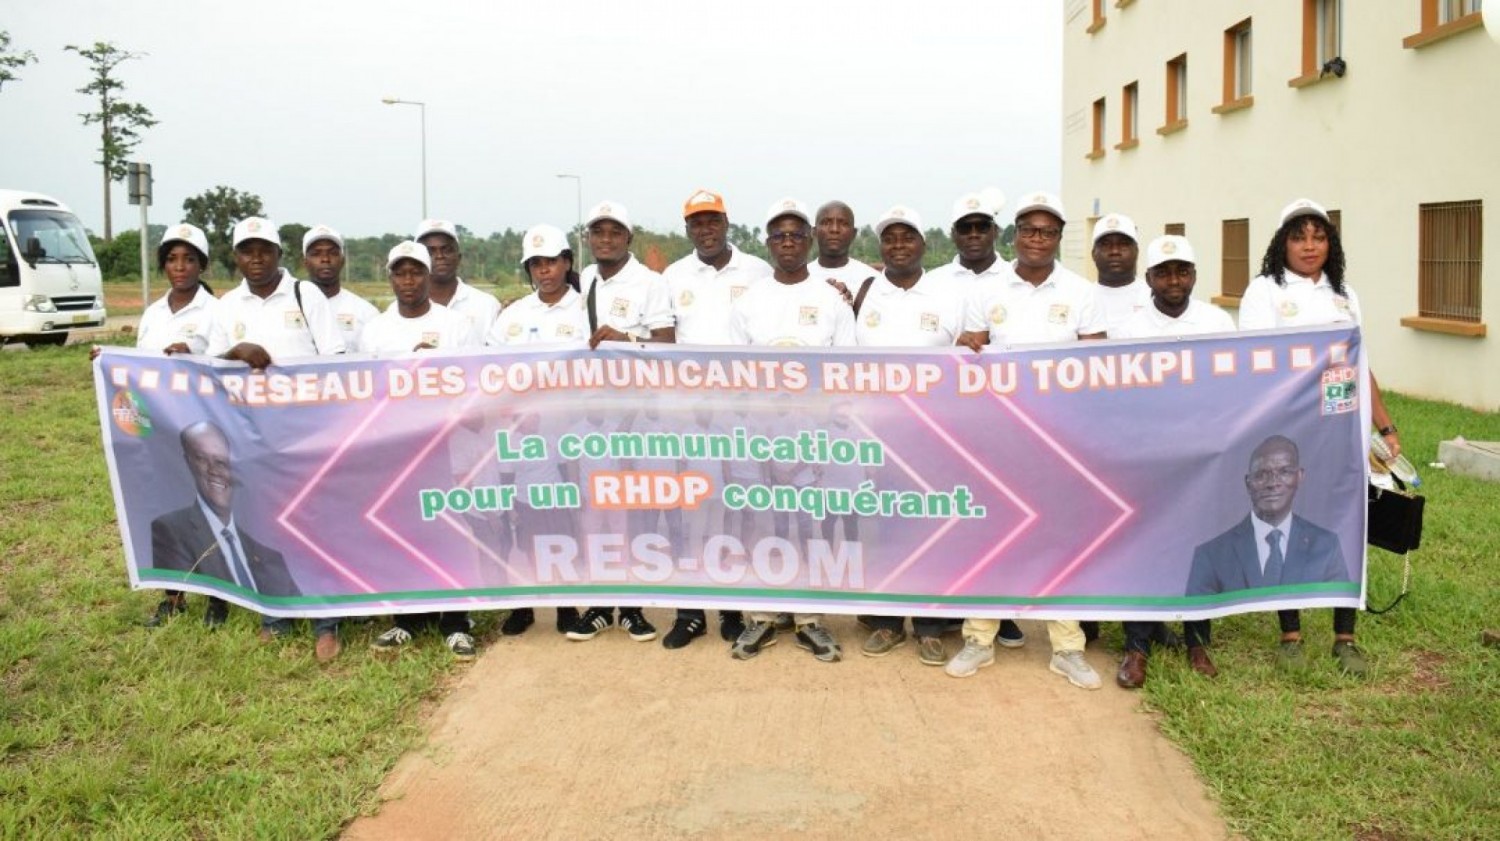 Côte d'Ivoire : Afin de mettre en exergue leurs actions dans le Tonkpi, le RHDP se dote d'une structure de communication